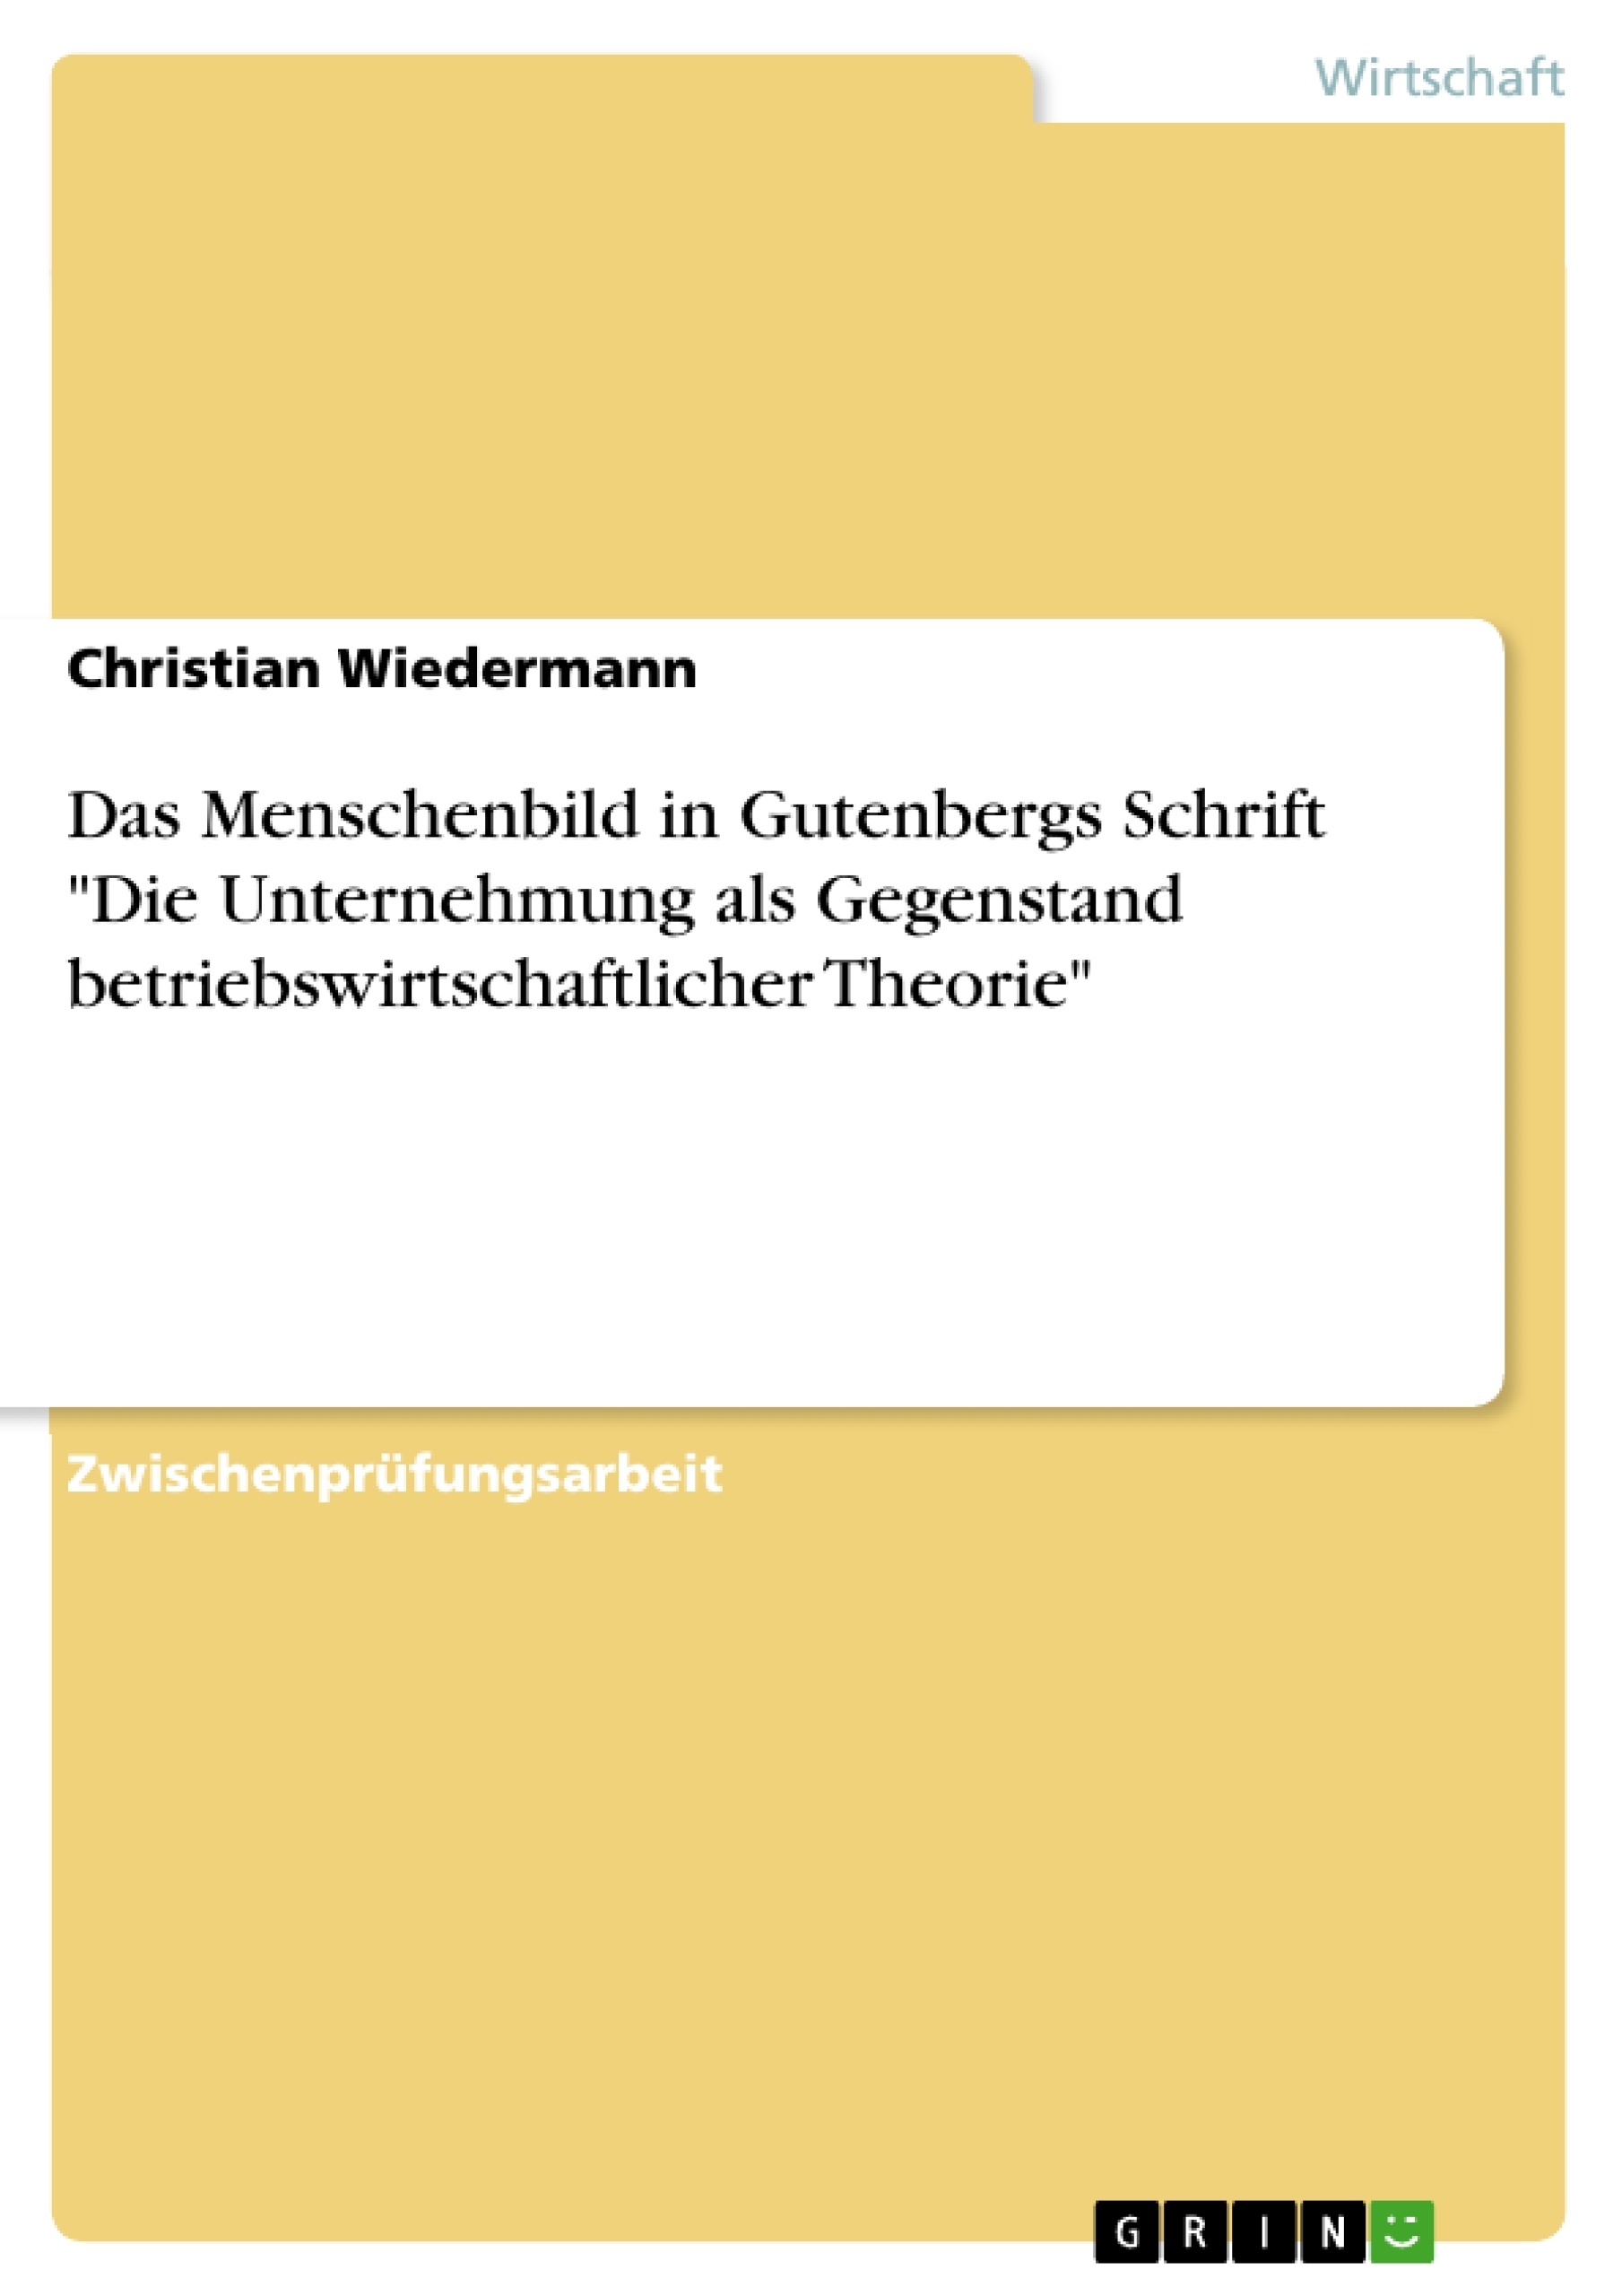 Título: Das Menschenbild in Gutenbergs Schrift "Die Unternehmung als Gegenstand betriebswirtschaftlicher Theorie"